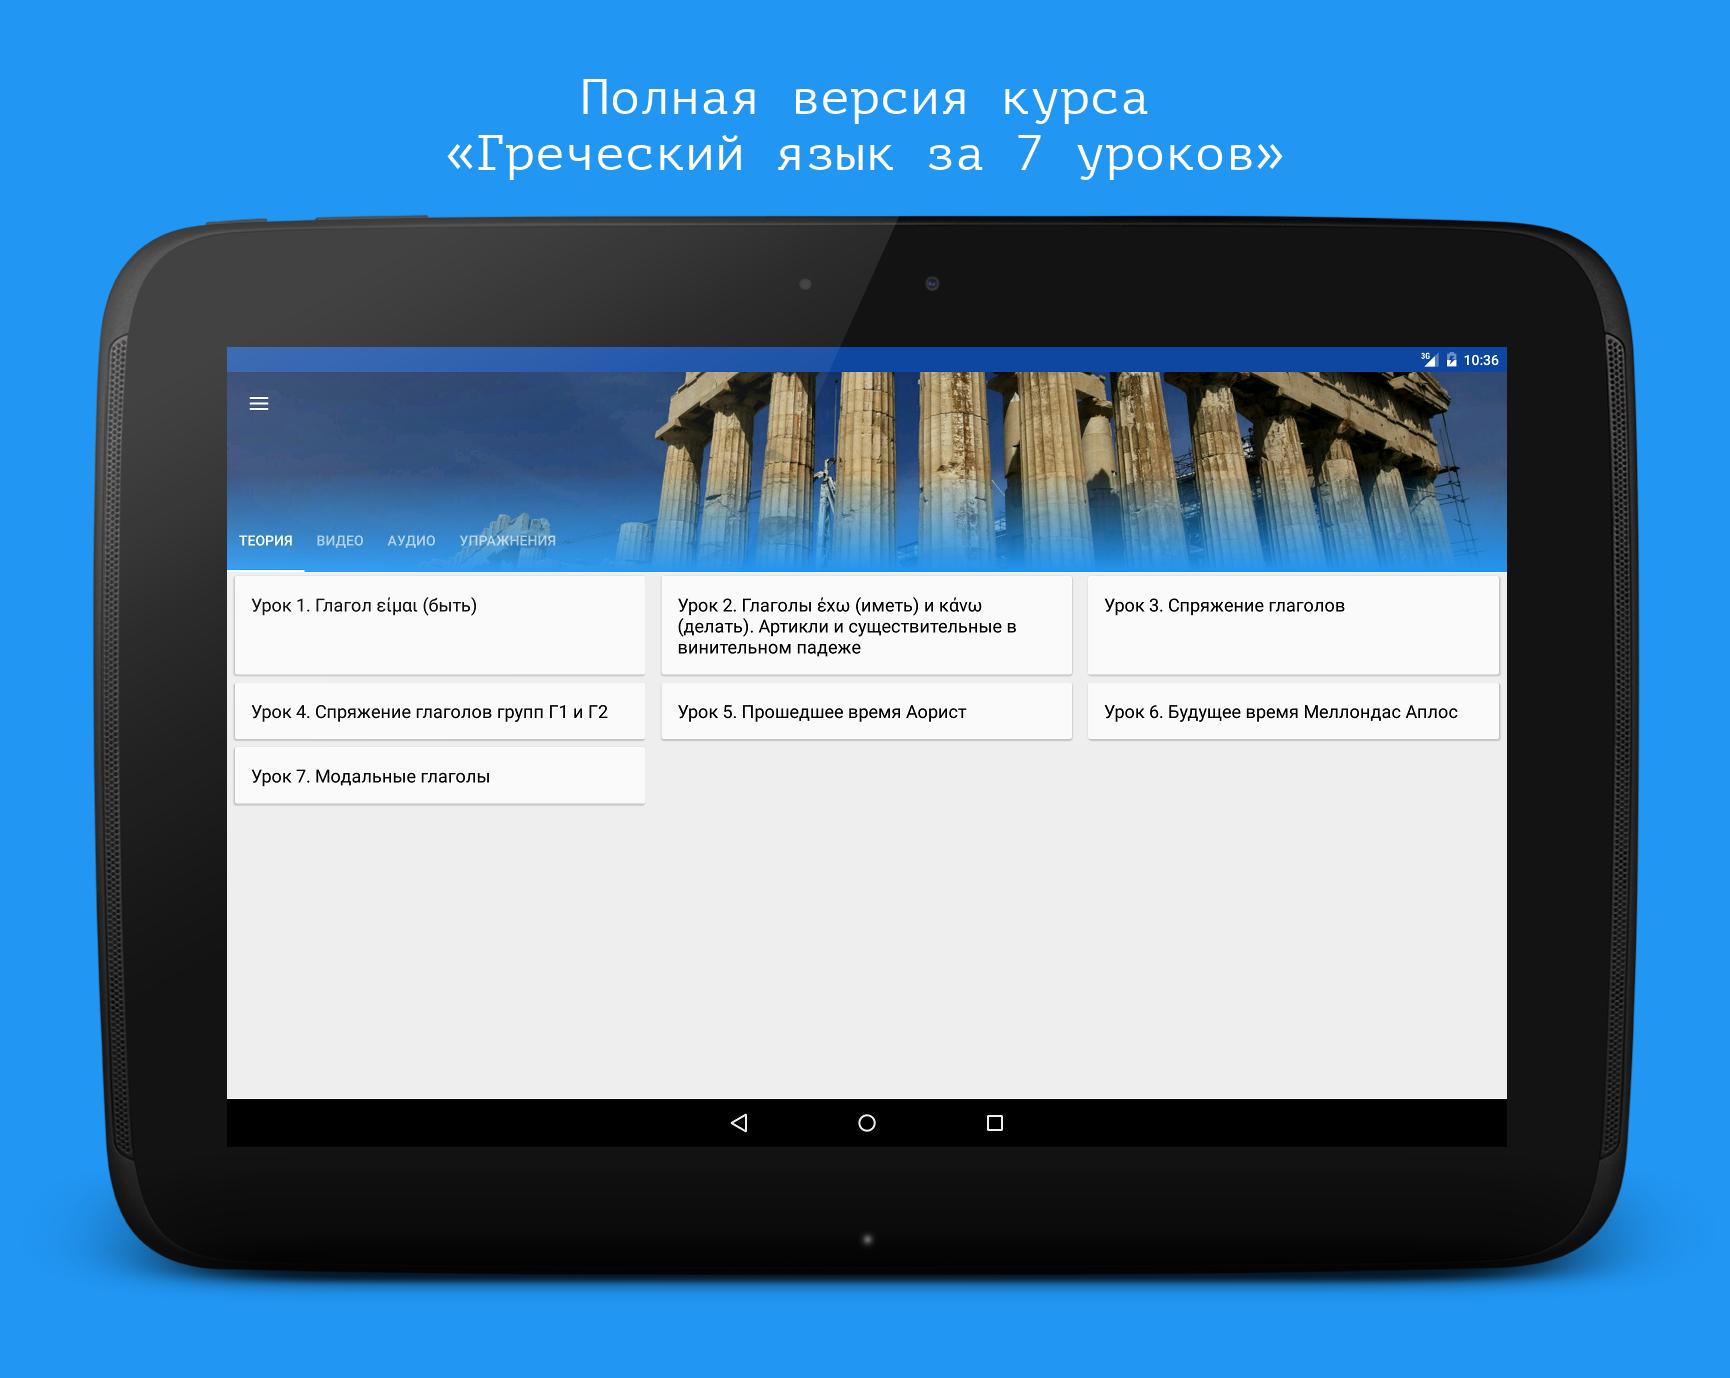 Новая версия курса. Греческий язык на андроид. Speakasap.